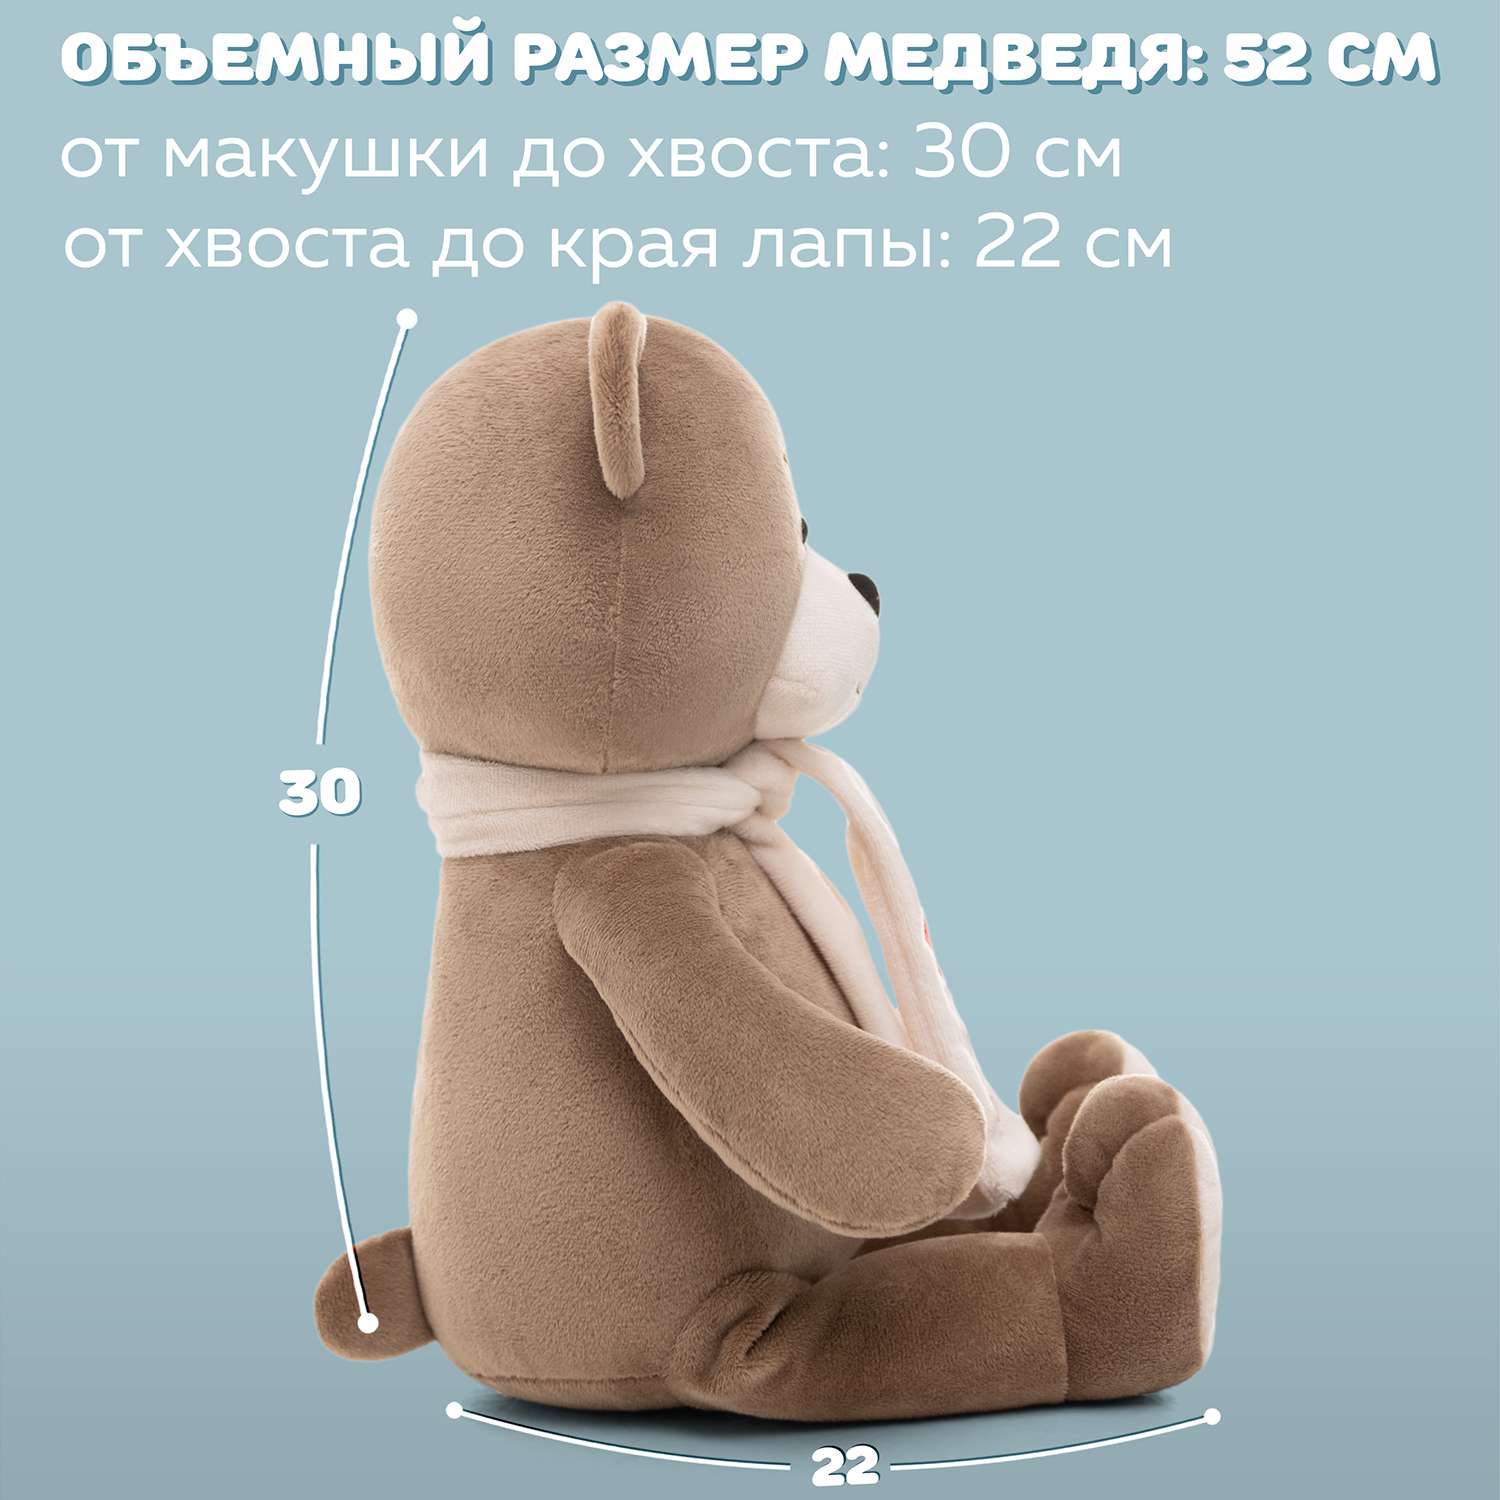 Медведь Мягкие игрушки БелайТойс Боня бежево-серый - фото 4